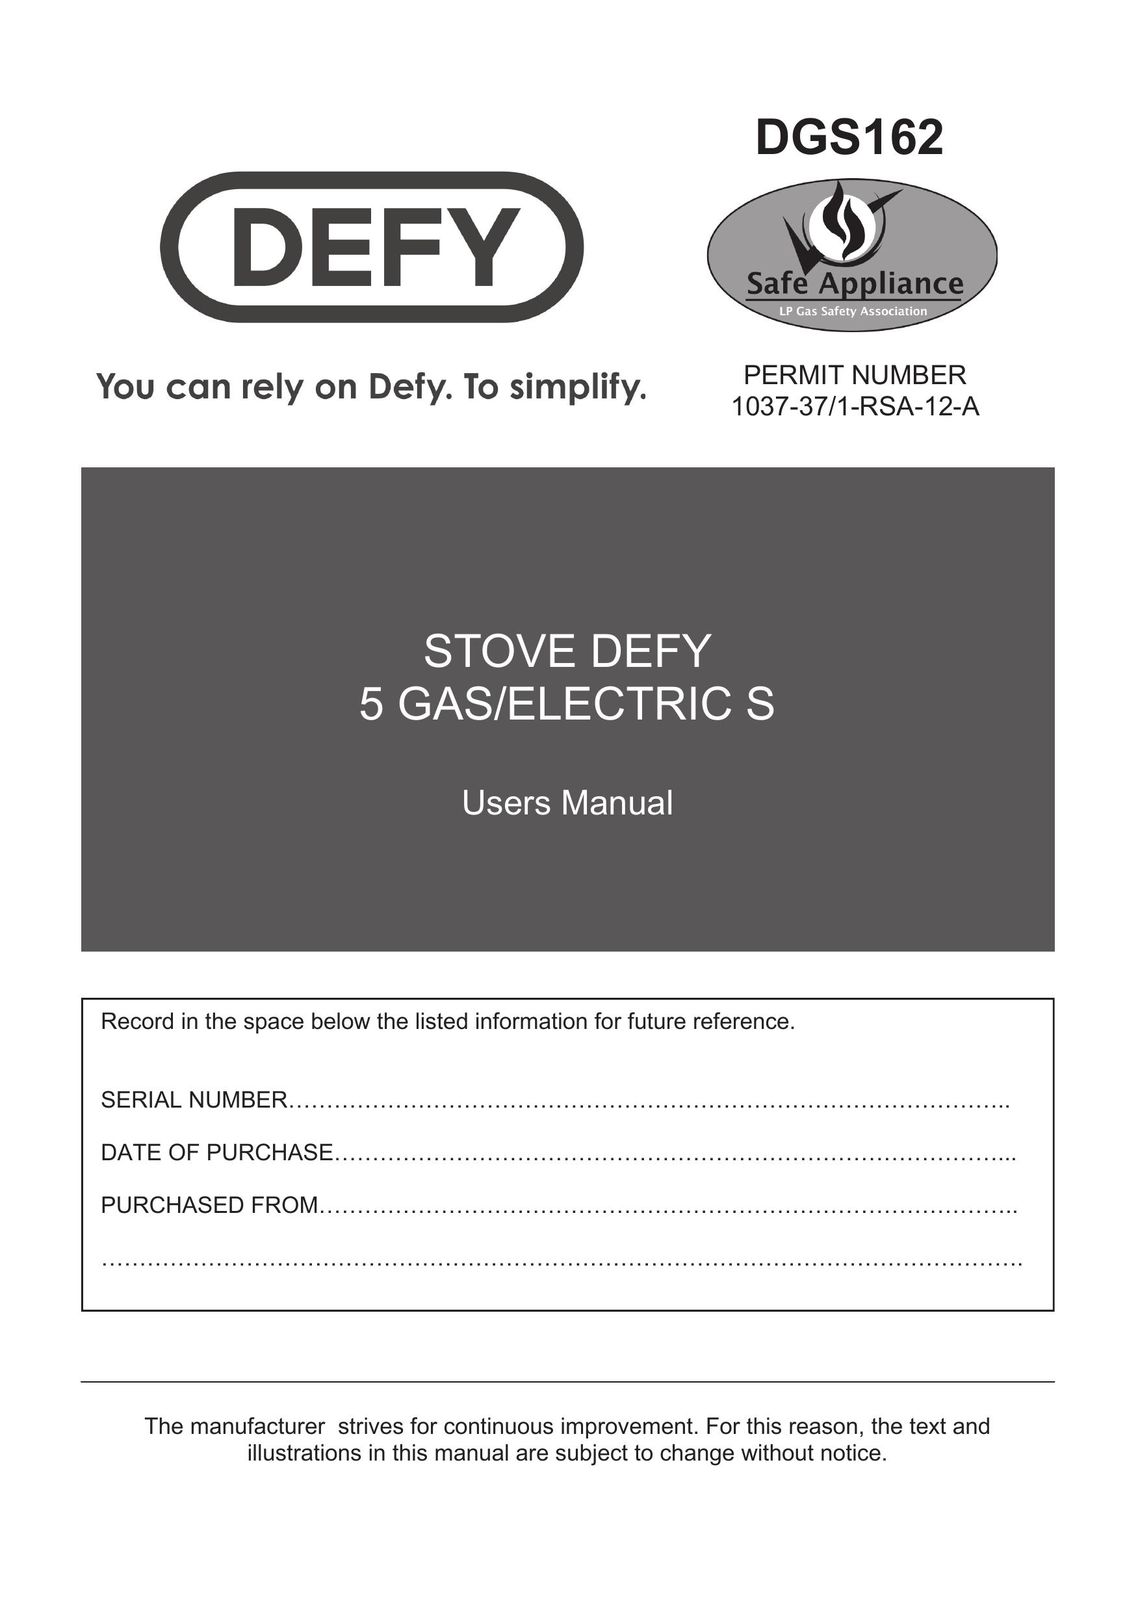 Defy Appliances DGS162 Stove User Manual